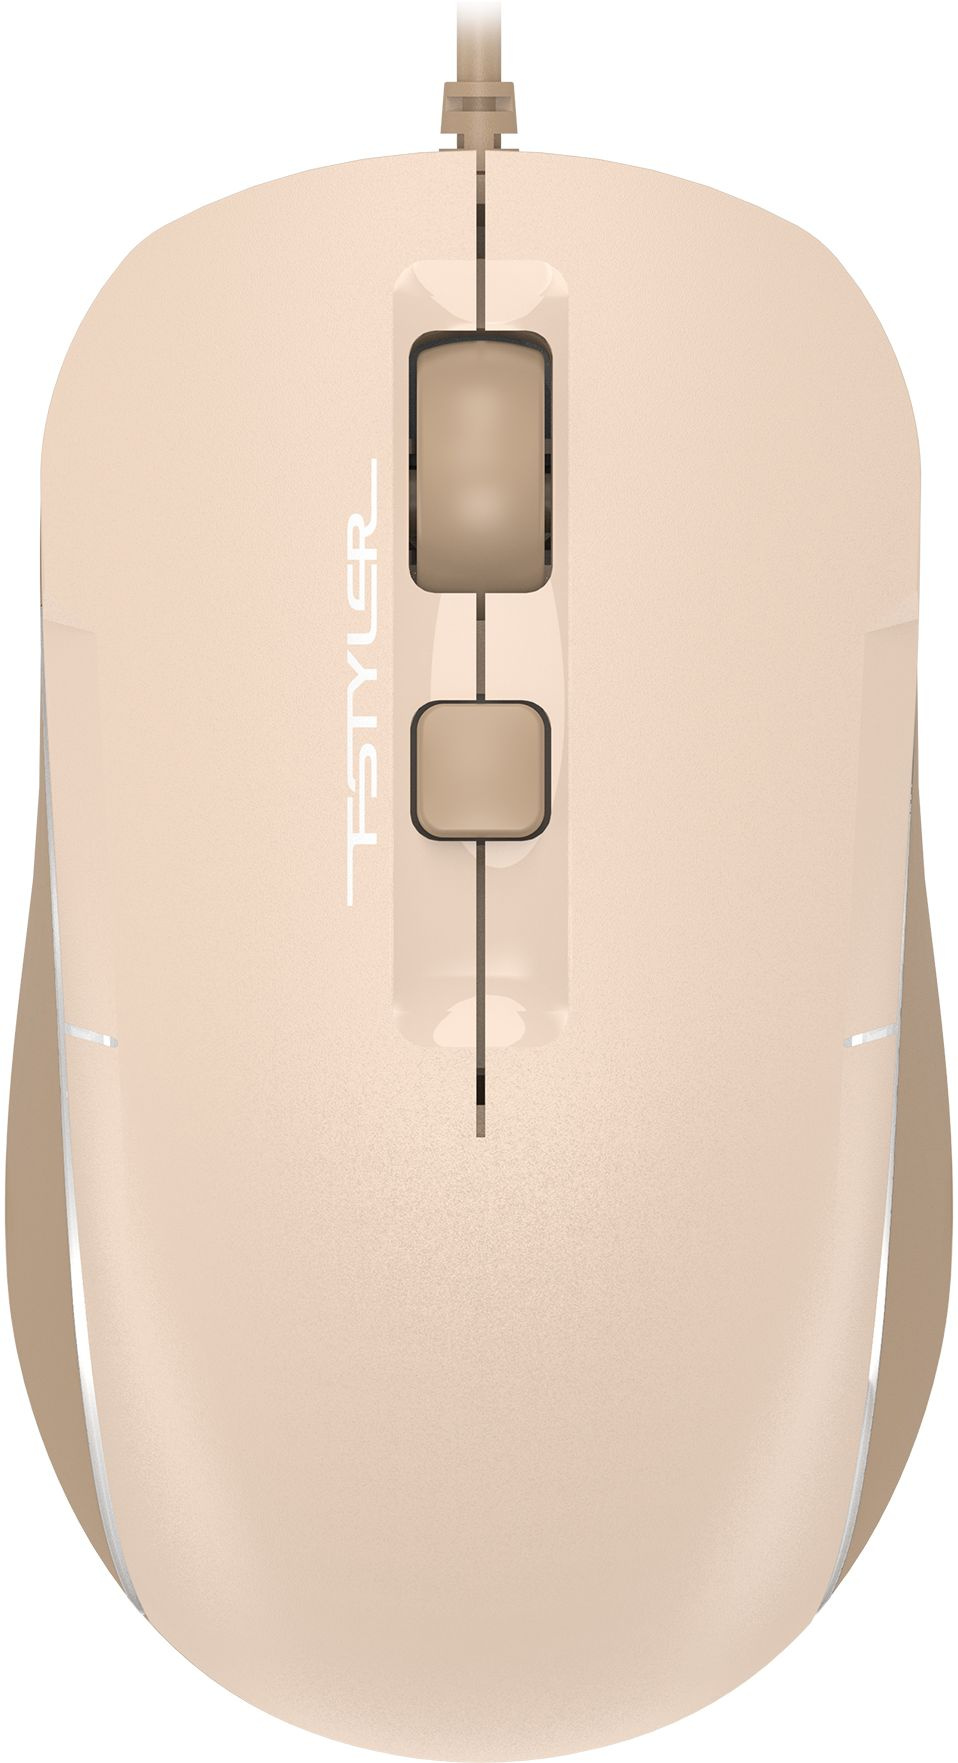 Мышь A4Tech Fstyler FM26S бежевый/коричневый оптическая (1600dpi) silent USB для ноутбука (4but)